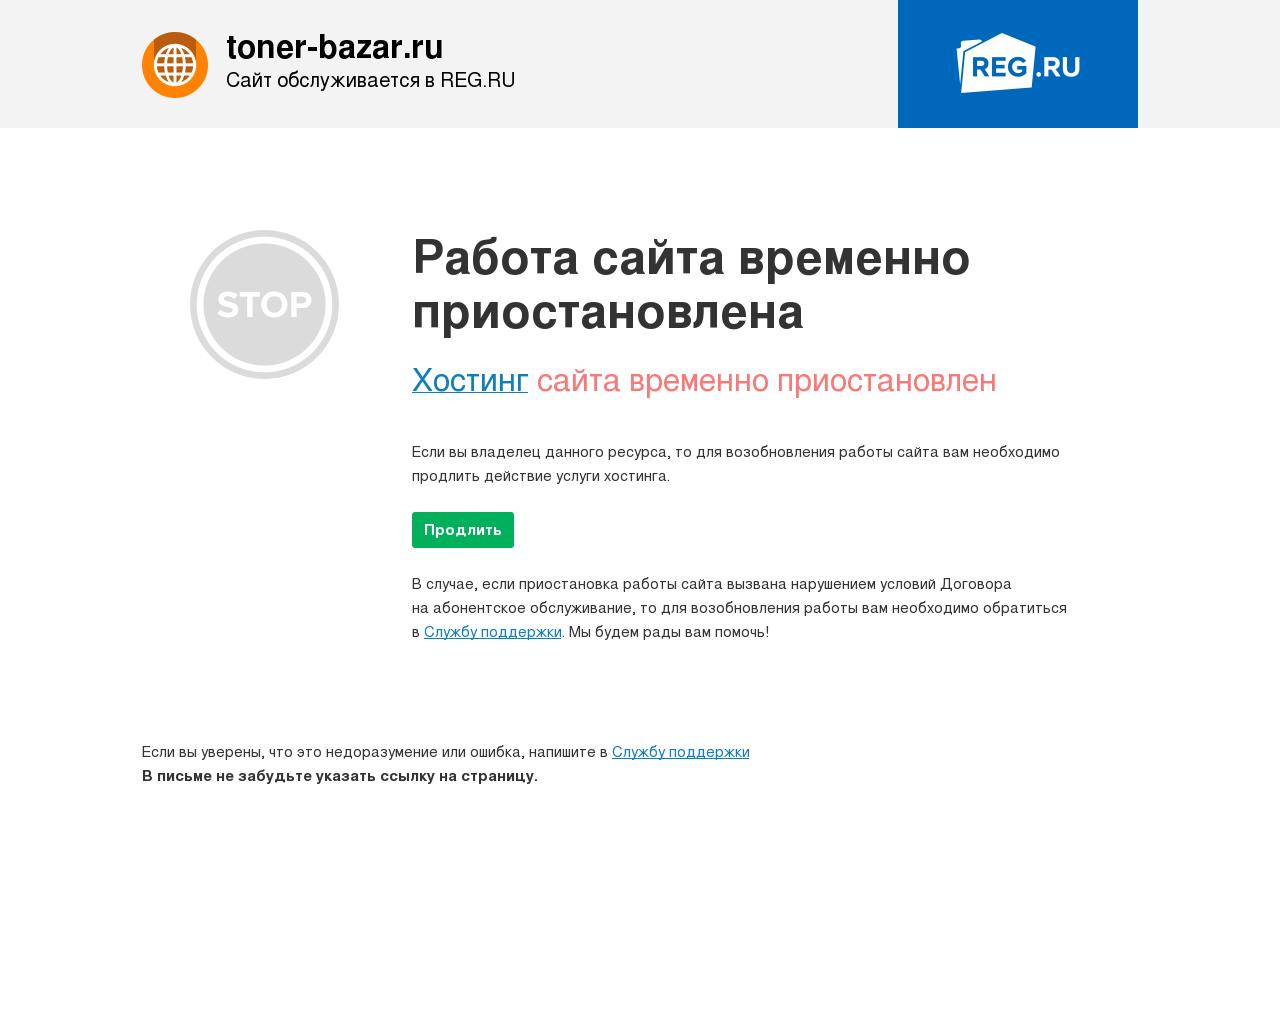 Изображение сайта toner-bazar.ru в разрешении 1280x1024